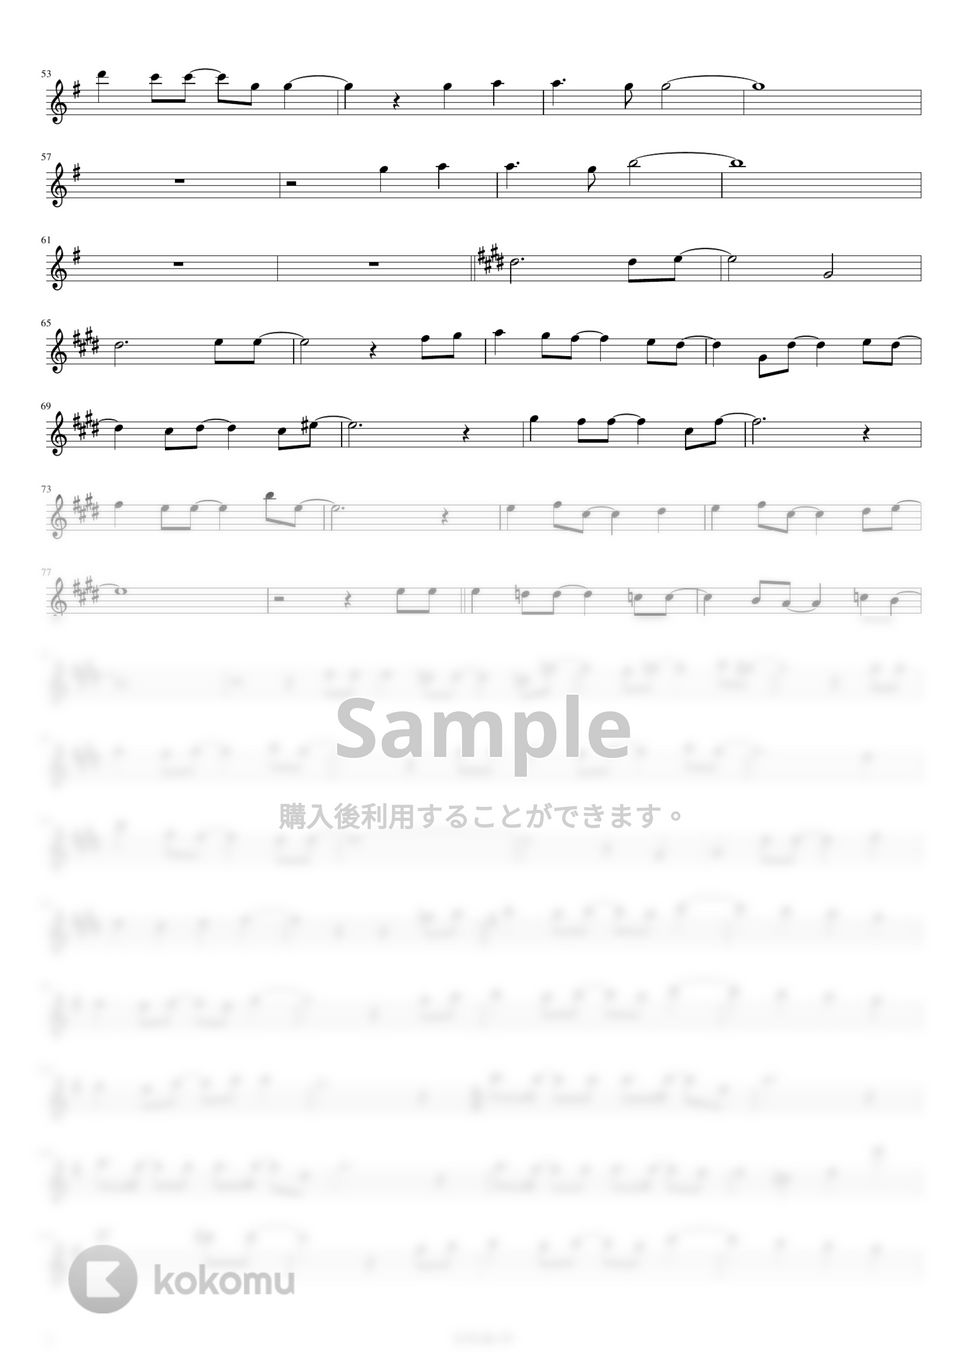 藍井 エイル - I will... (フルート用メロディー譜) by もりたあいか